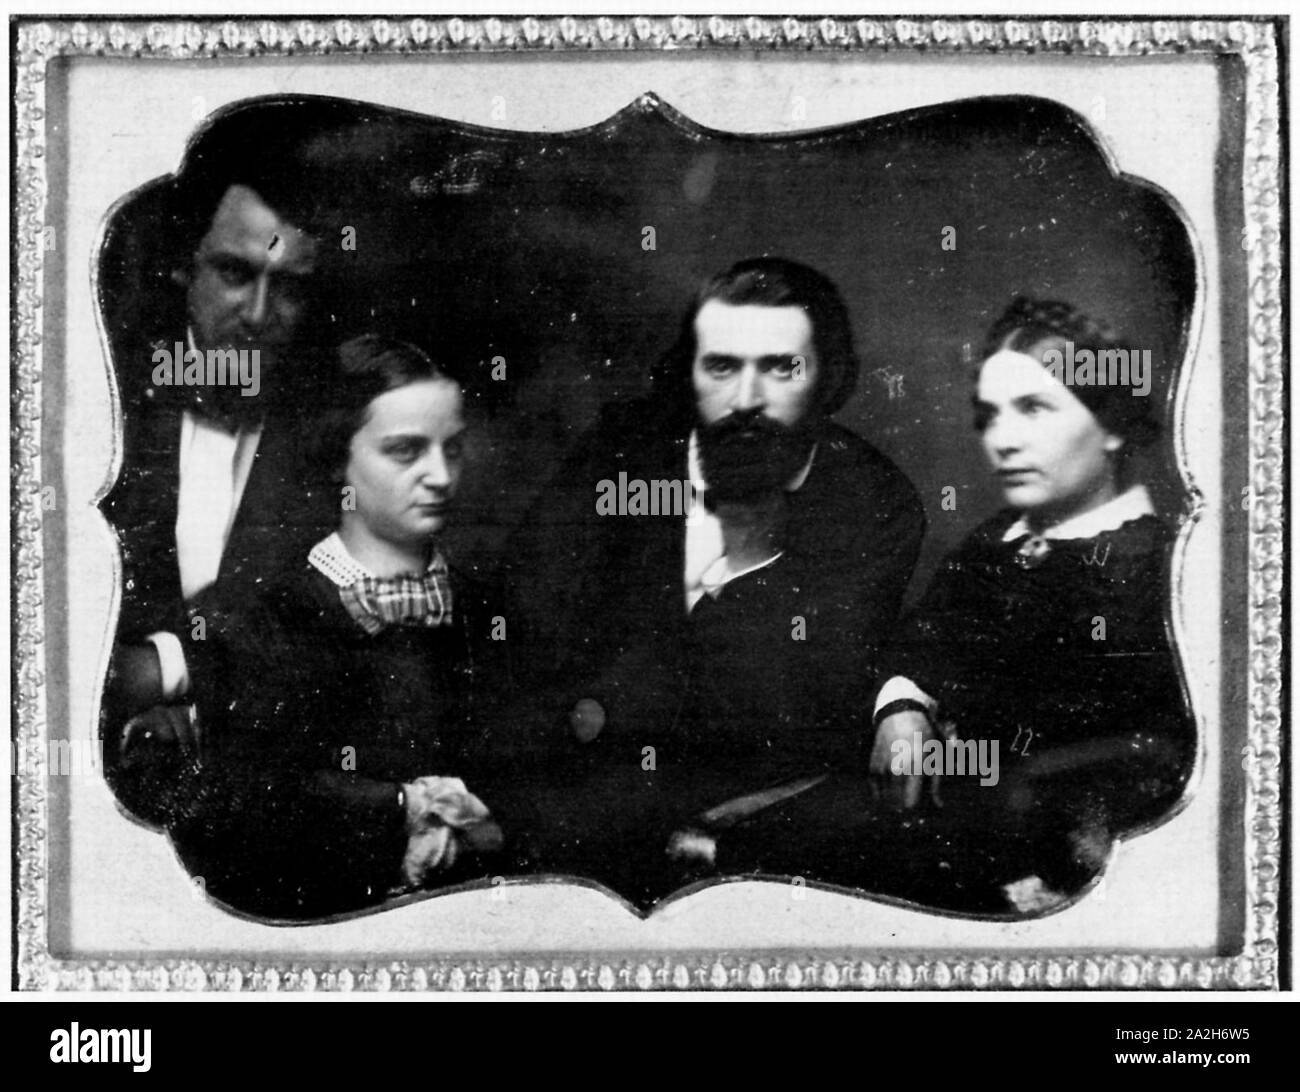 Englischer Photograph um 1850 - Gruppenbild unbekannter Personen Stock Photo